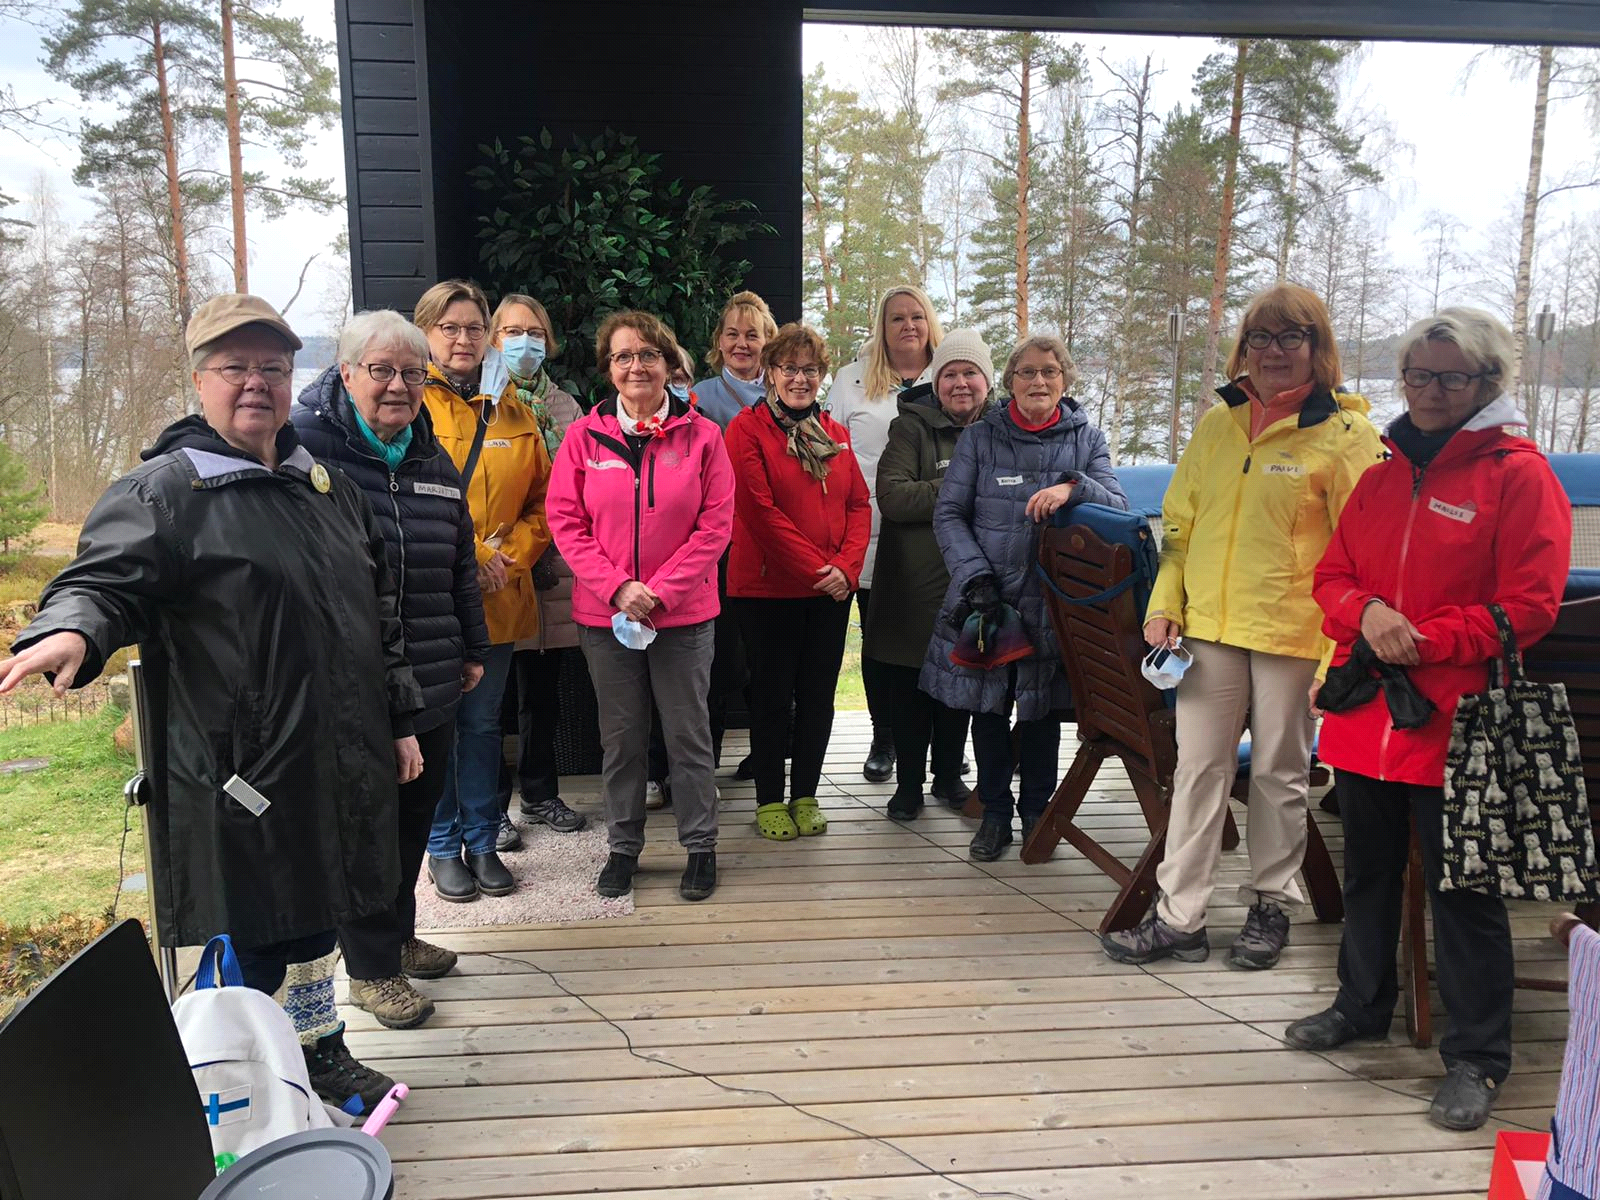 Illan vetäjinä toimivat Kangasalan marttojen jäsenet Marita Kankaanpää ja sihteeri Taru Tuomainen, jonka terassilla tapahtuma järjestettiin 10. toukokuuta Pikonlinnan rantamaisemissa.